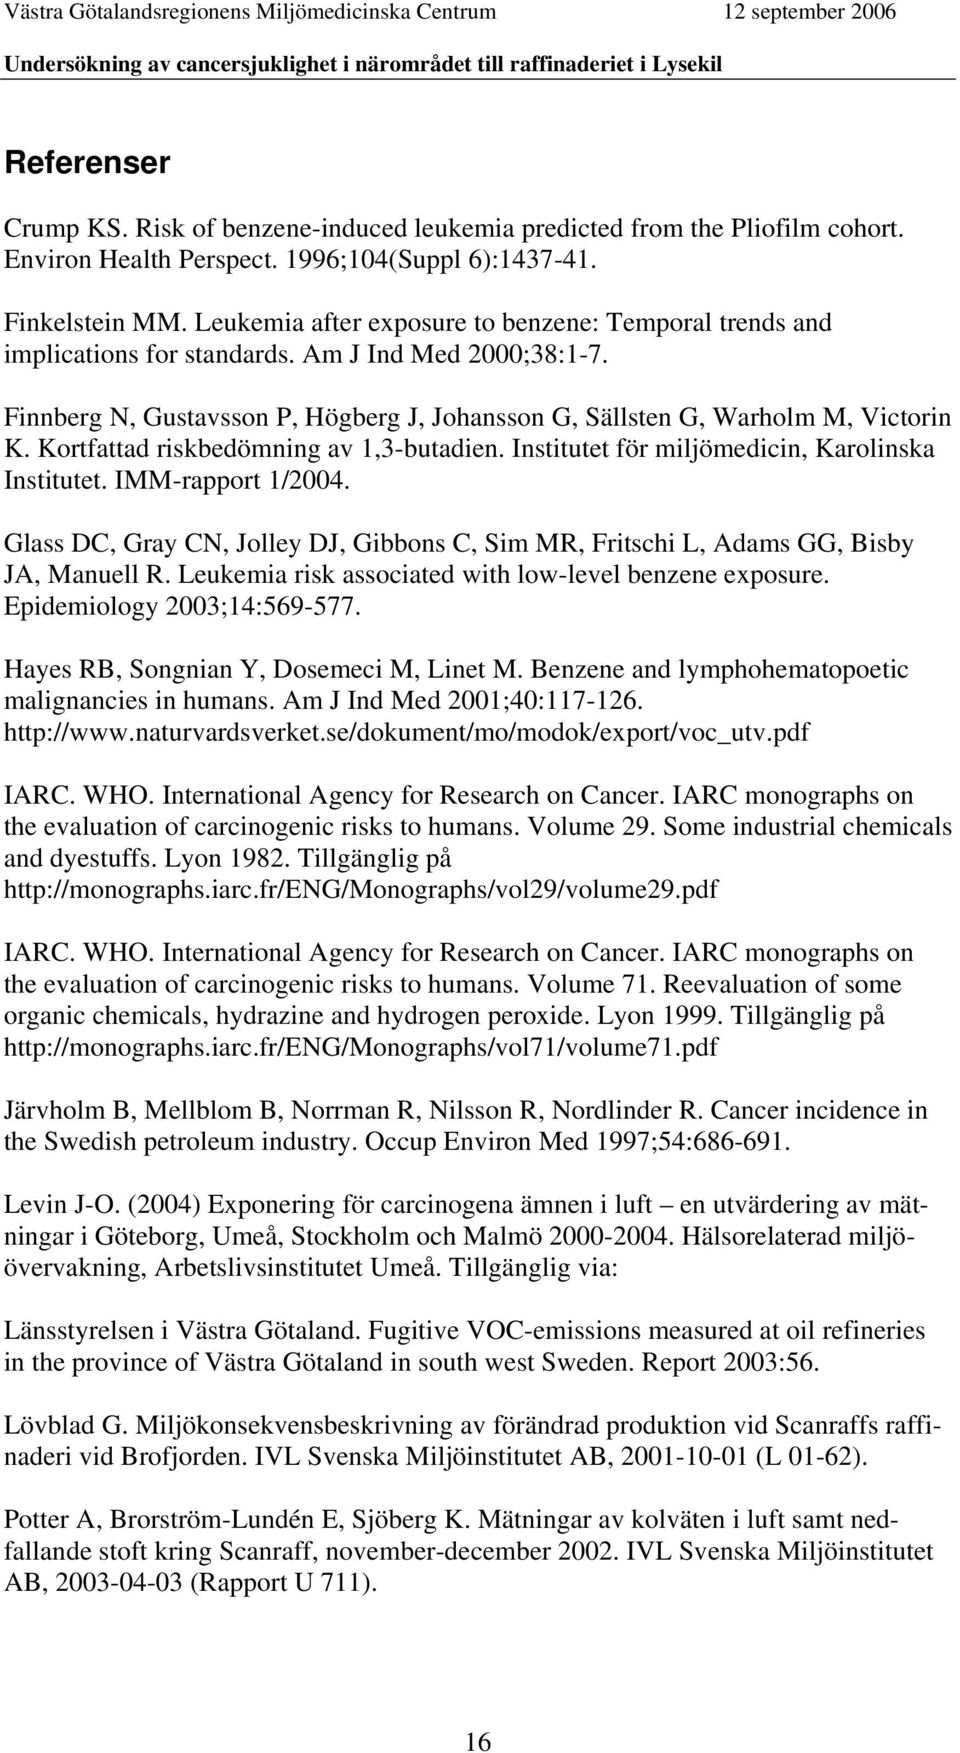 Kortfattad riskbedömning av 1,3-butadien. Institutet för miljömedicin, Karolinska Institutet. IMM-rapport 1/2004.